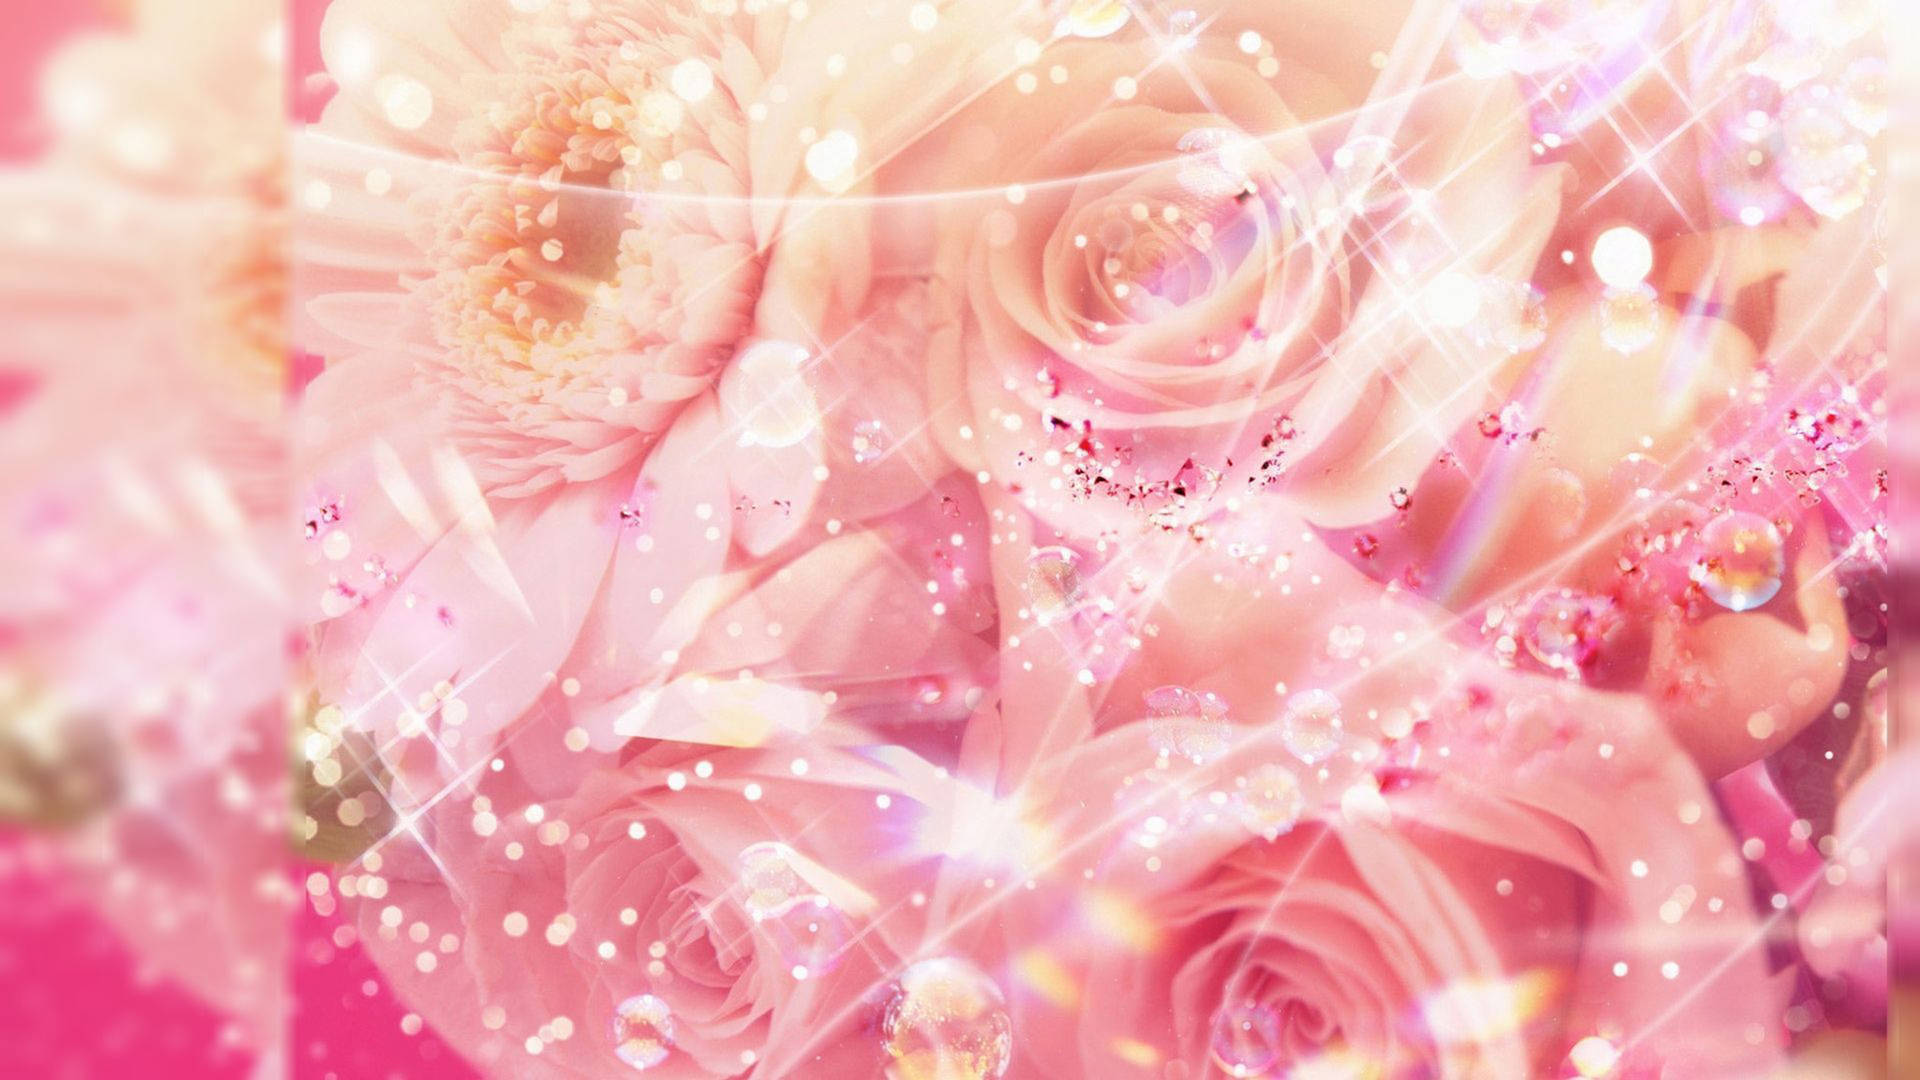 Cute Pink Bouquet